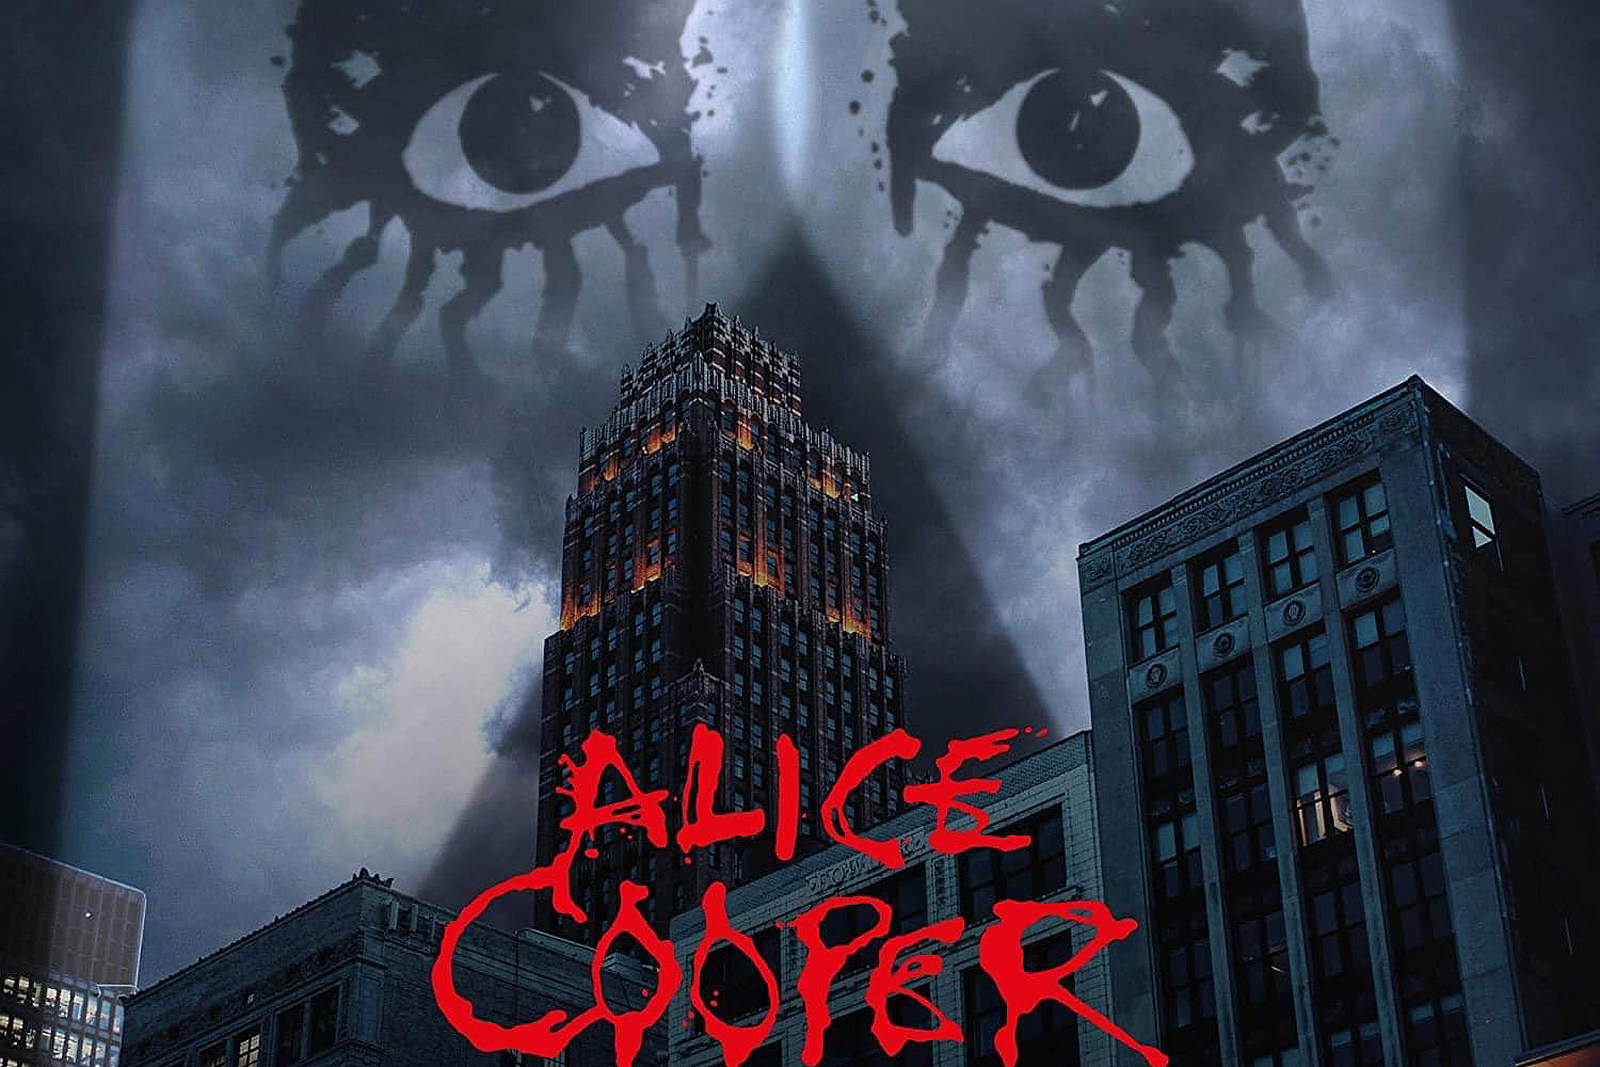 Alice Cooper anuncia nuevo álbum ‘Detroit Stories’